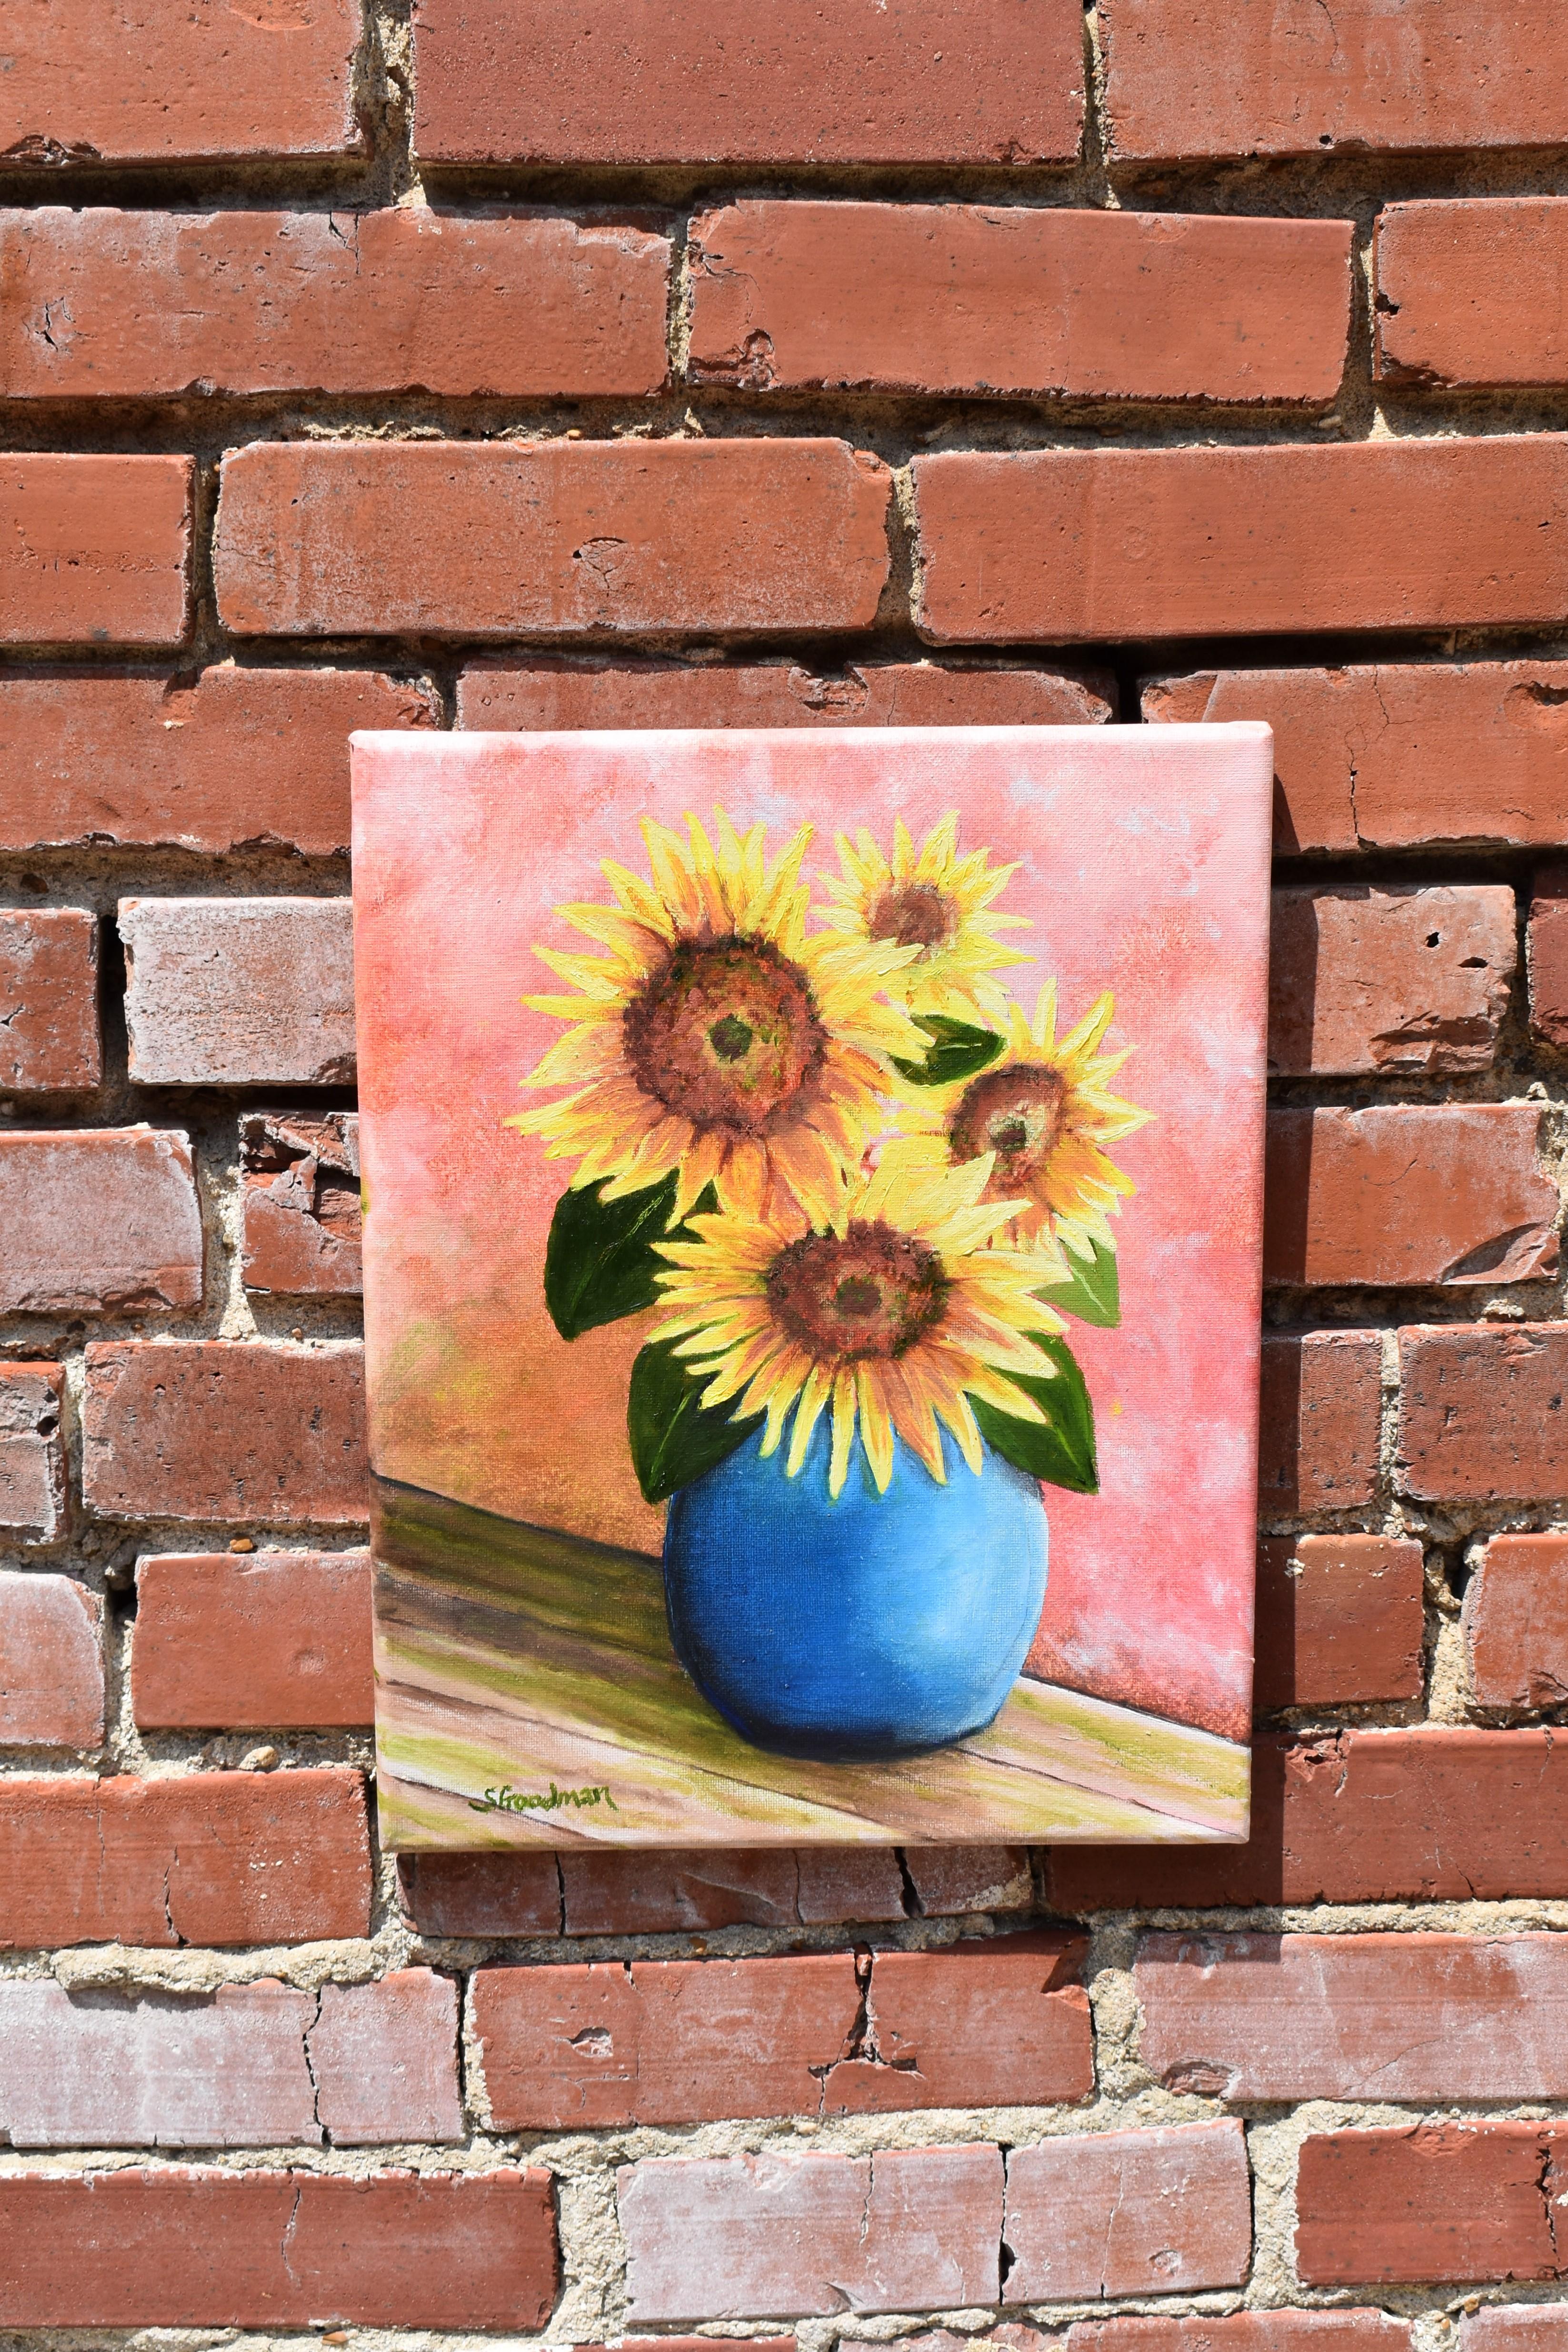 <p>Commentaires de l'artiste<br>L'artiste Shela Goodman peint des tournesols lumineux et colorés dans un vase bleu. La nature morte impressionniste capture la simplicité et la beauté de la nature. Shela peint des pétales d'un jaune éclatant qui se